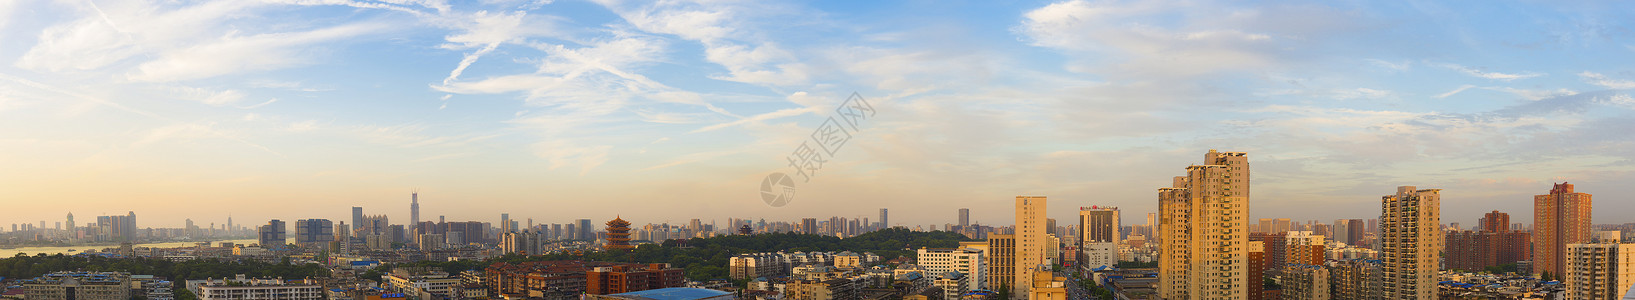 俯视长江主轴上的城市美景背景图片